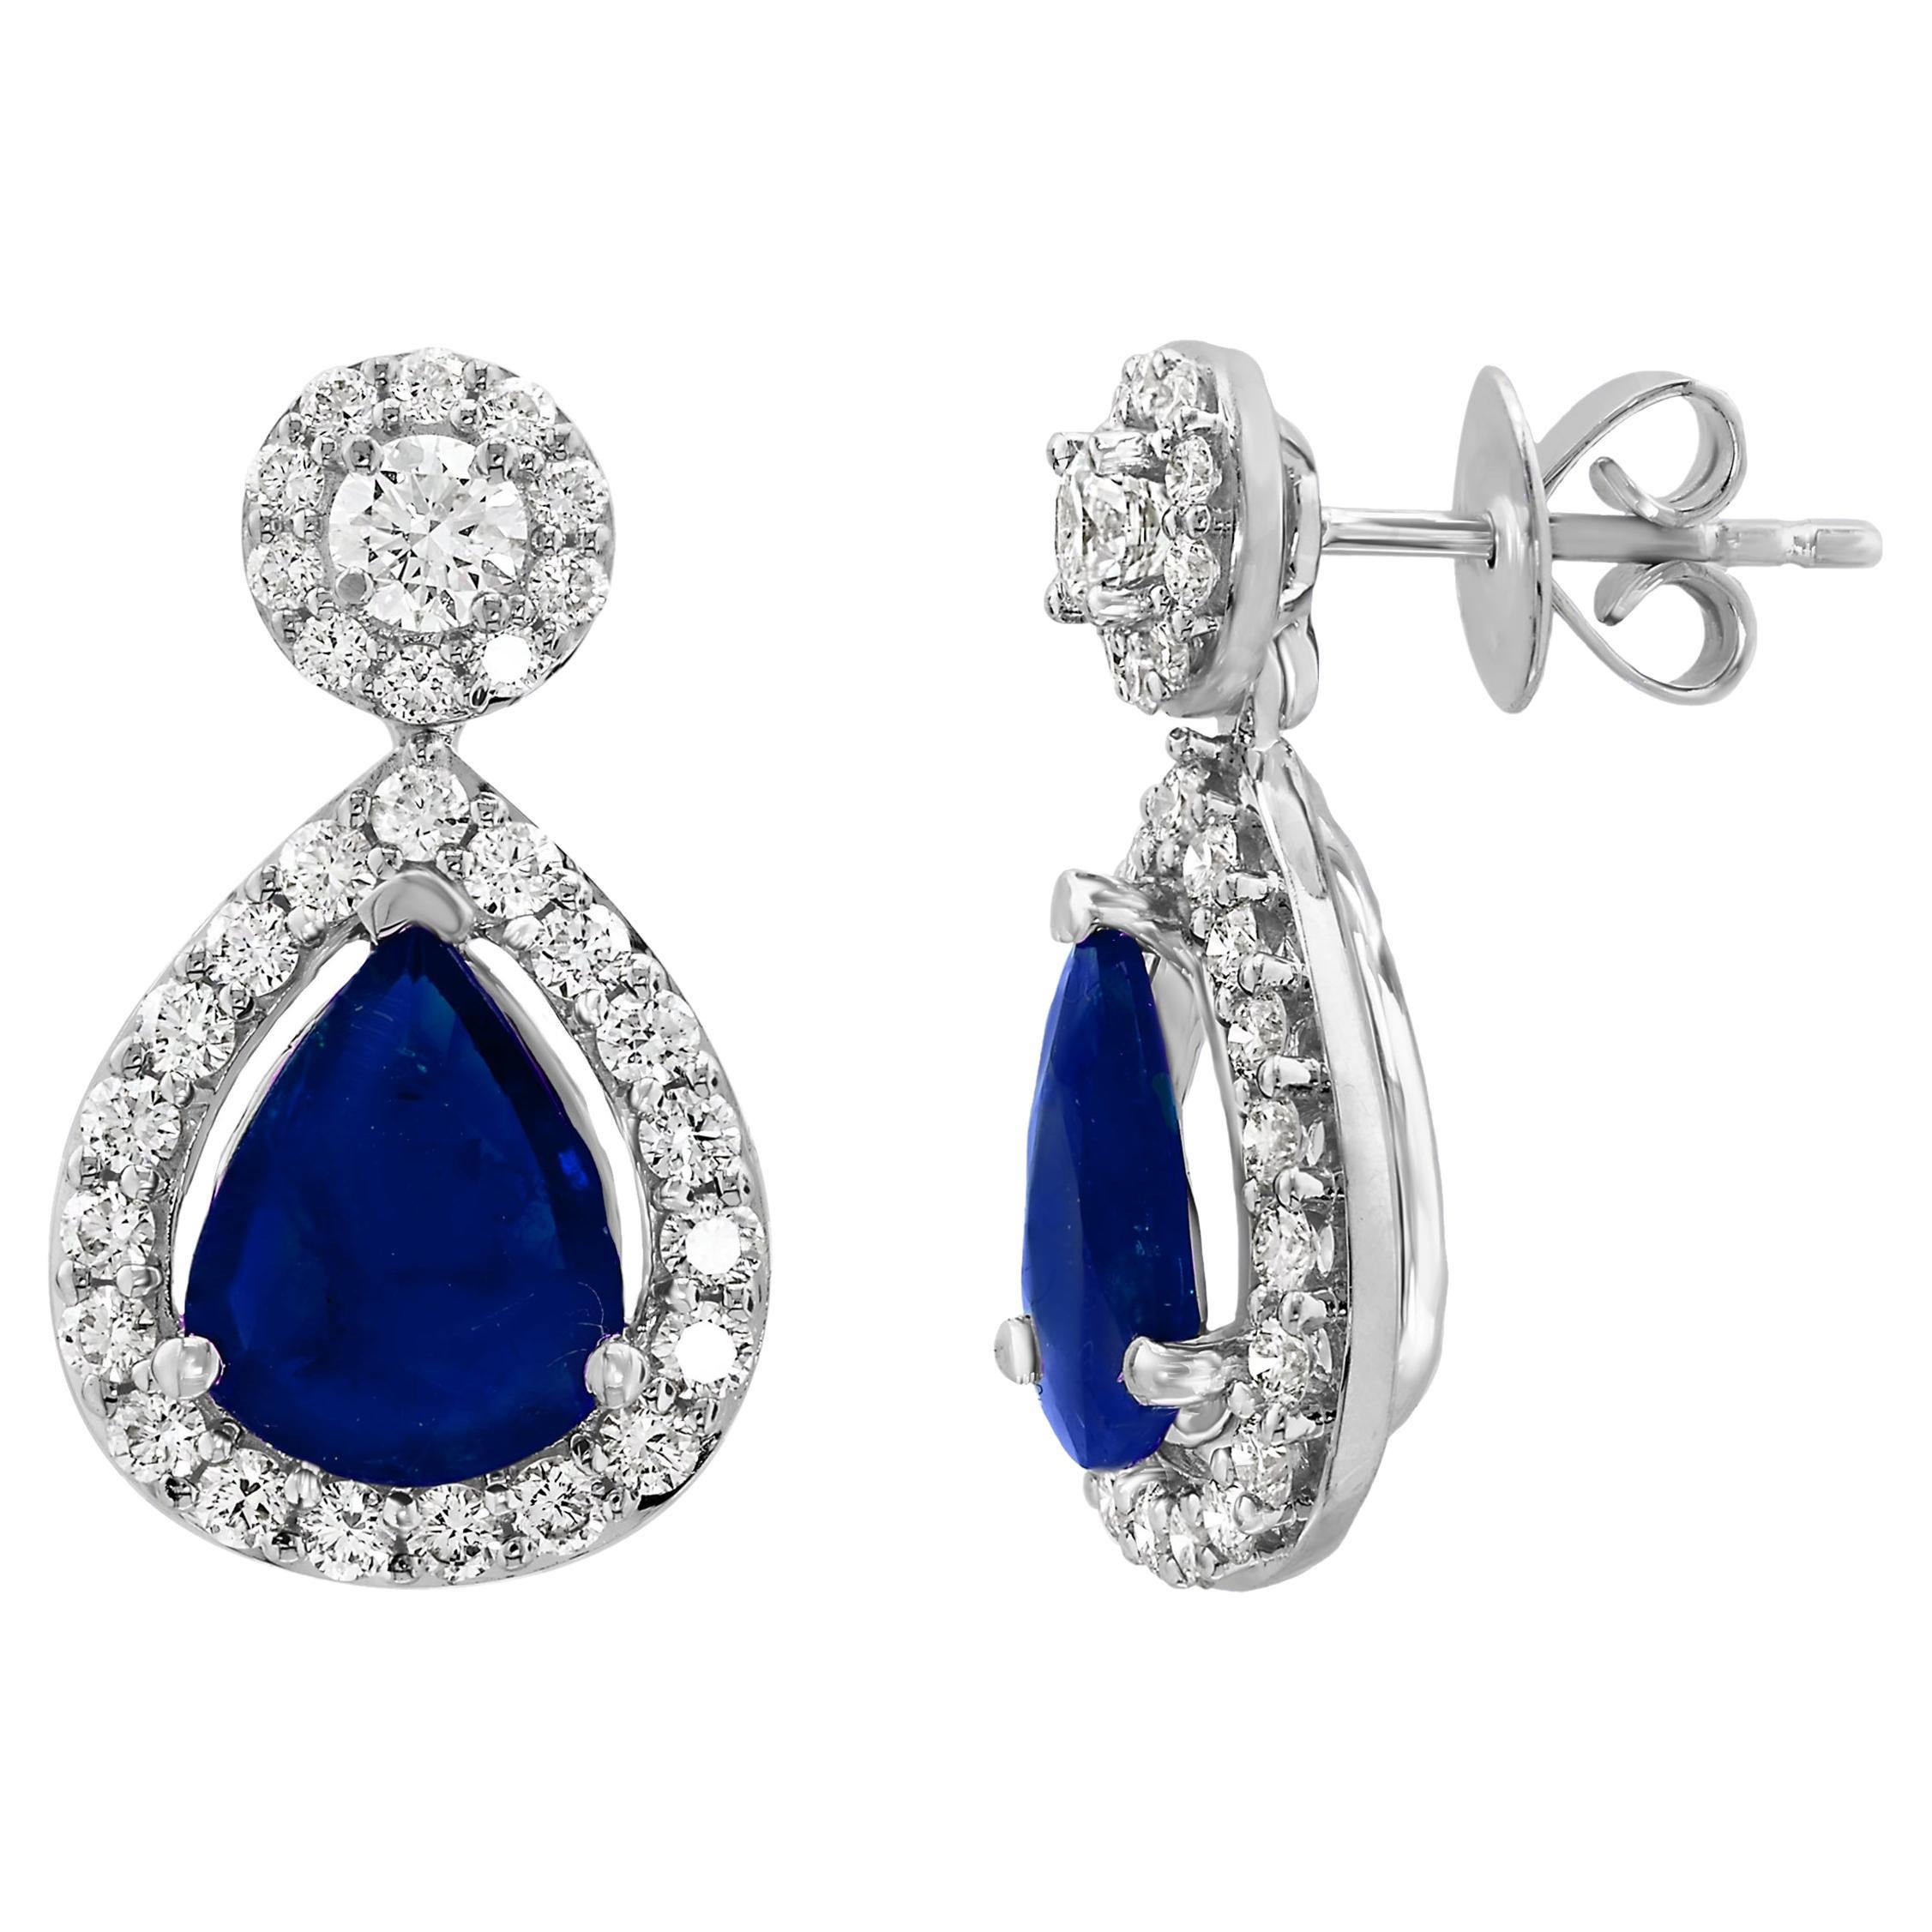 5.34 Carat of Pear Shape Blue Sapphire Diamond Drop Earrings in 18K White Gold